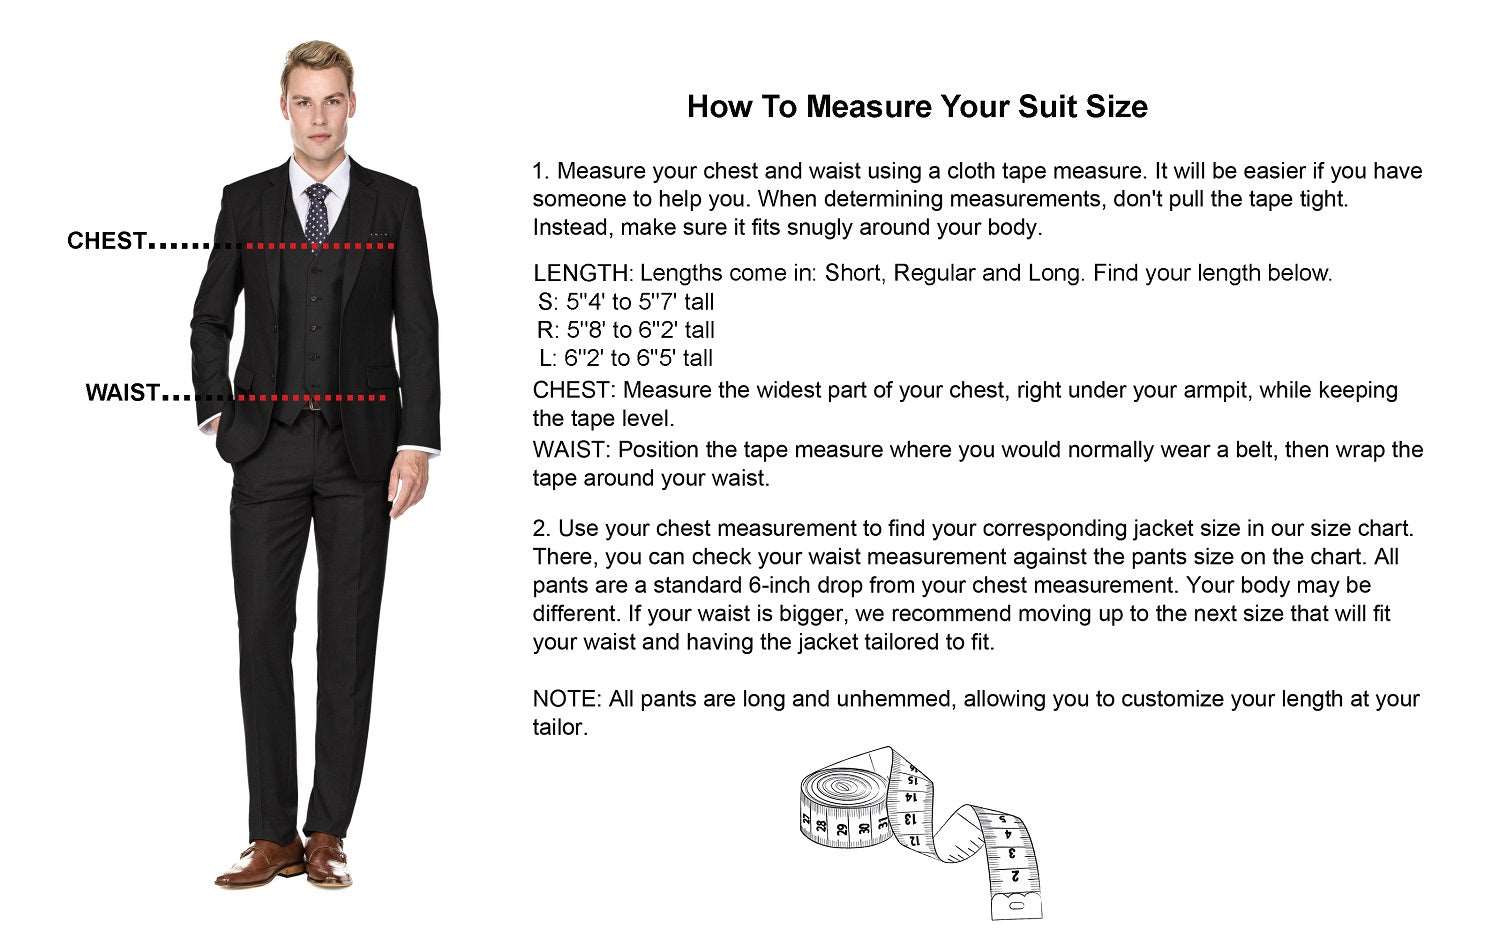 Super 120's Black Slim Fit Suit - Belmeade Mens Wear